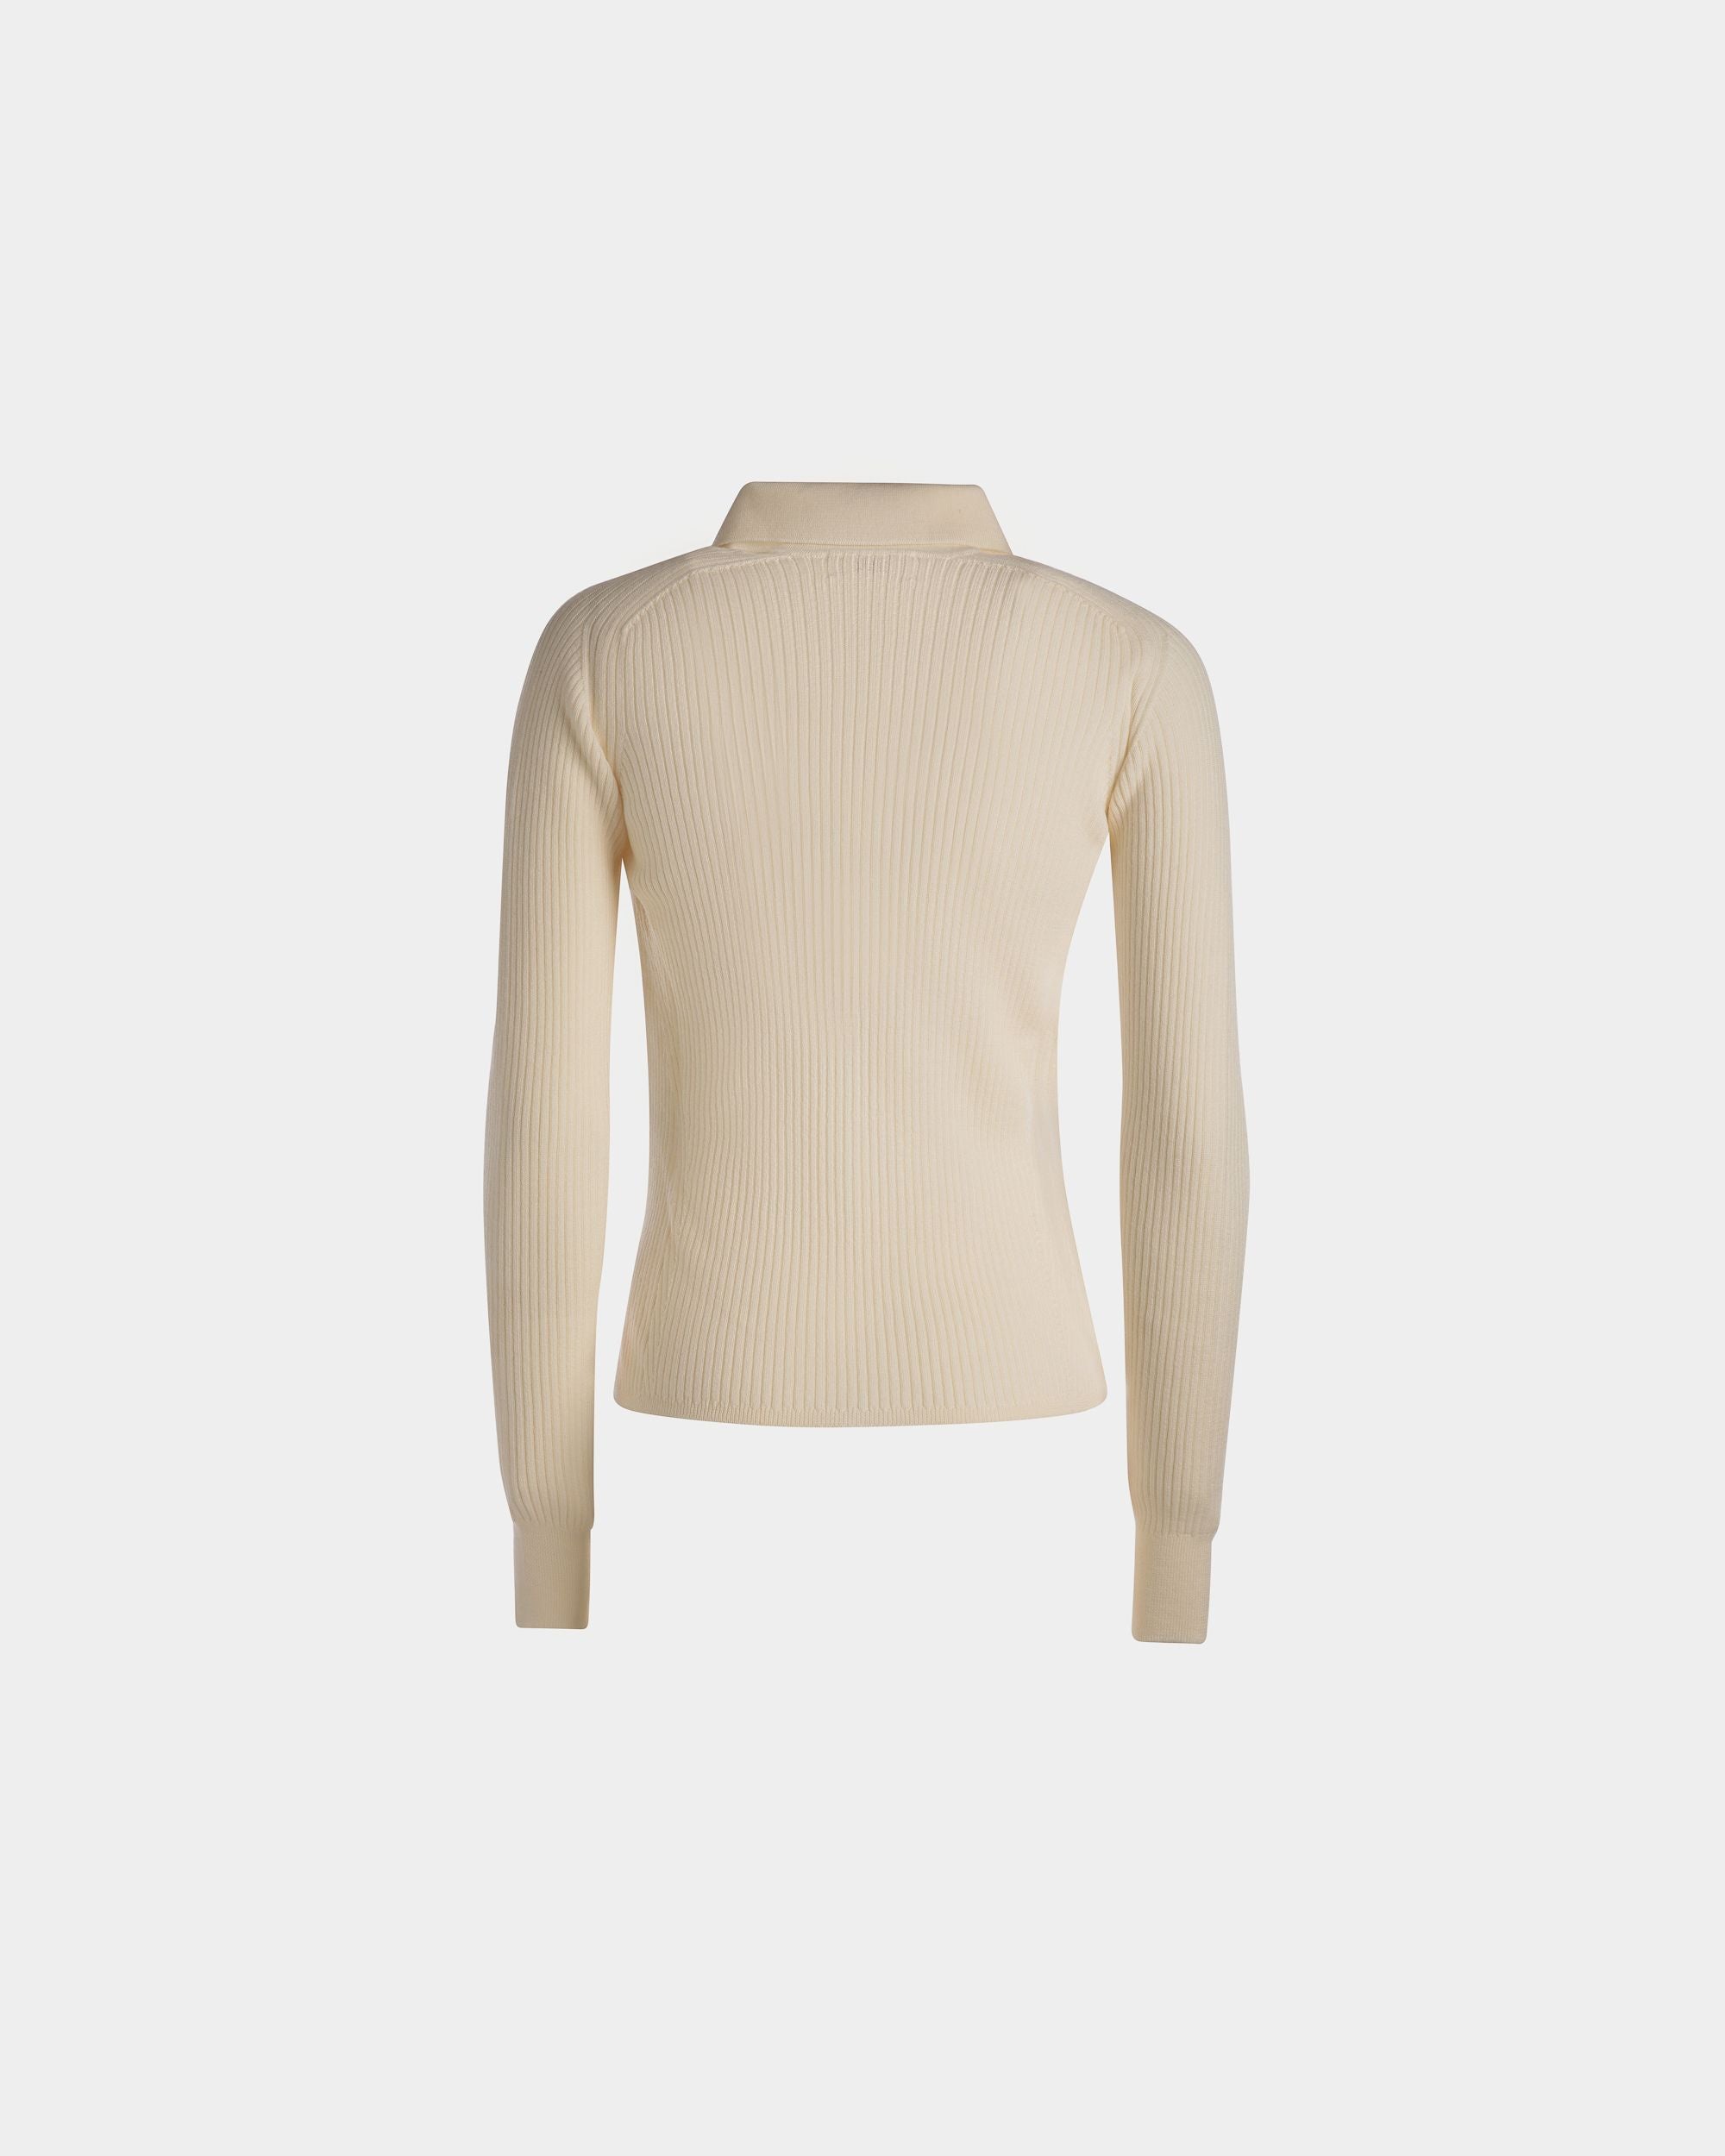 Langarm-Poloshirt | Poloshirt für Damen | Wolle in Elfenbein | Bally | Still Life Rückseite